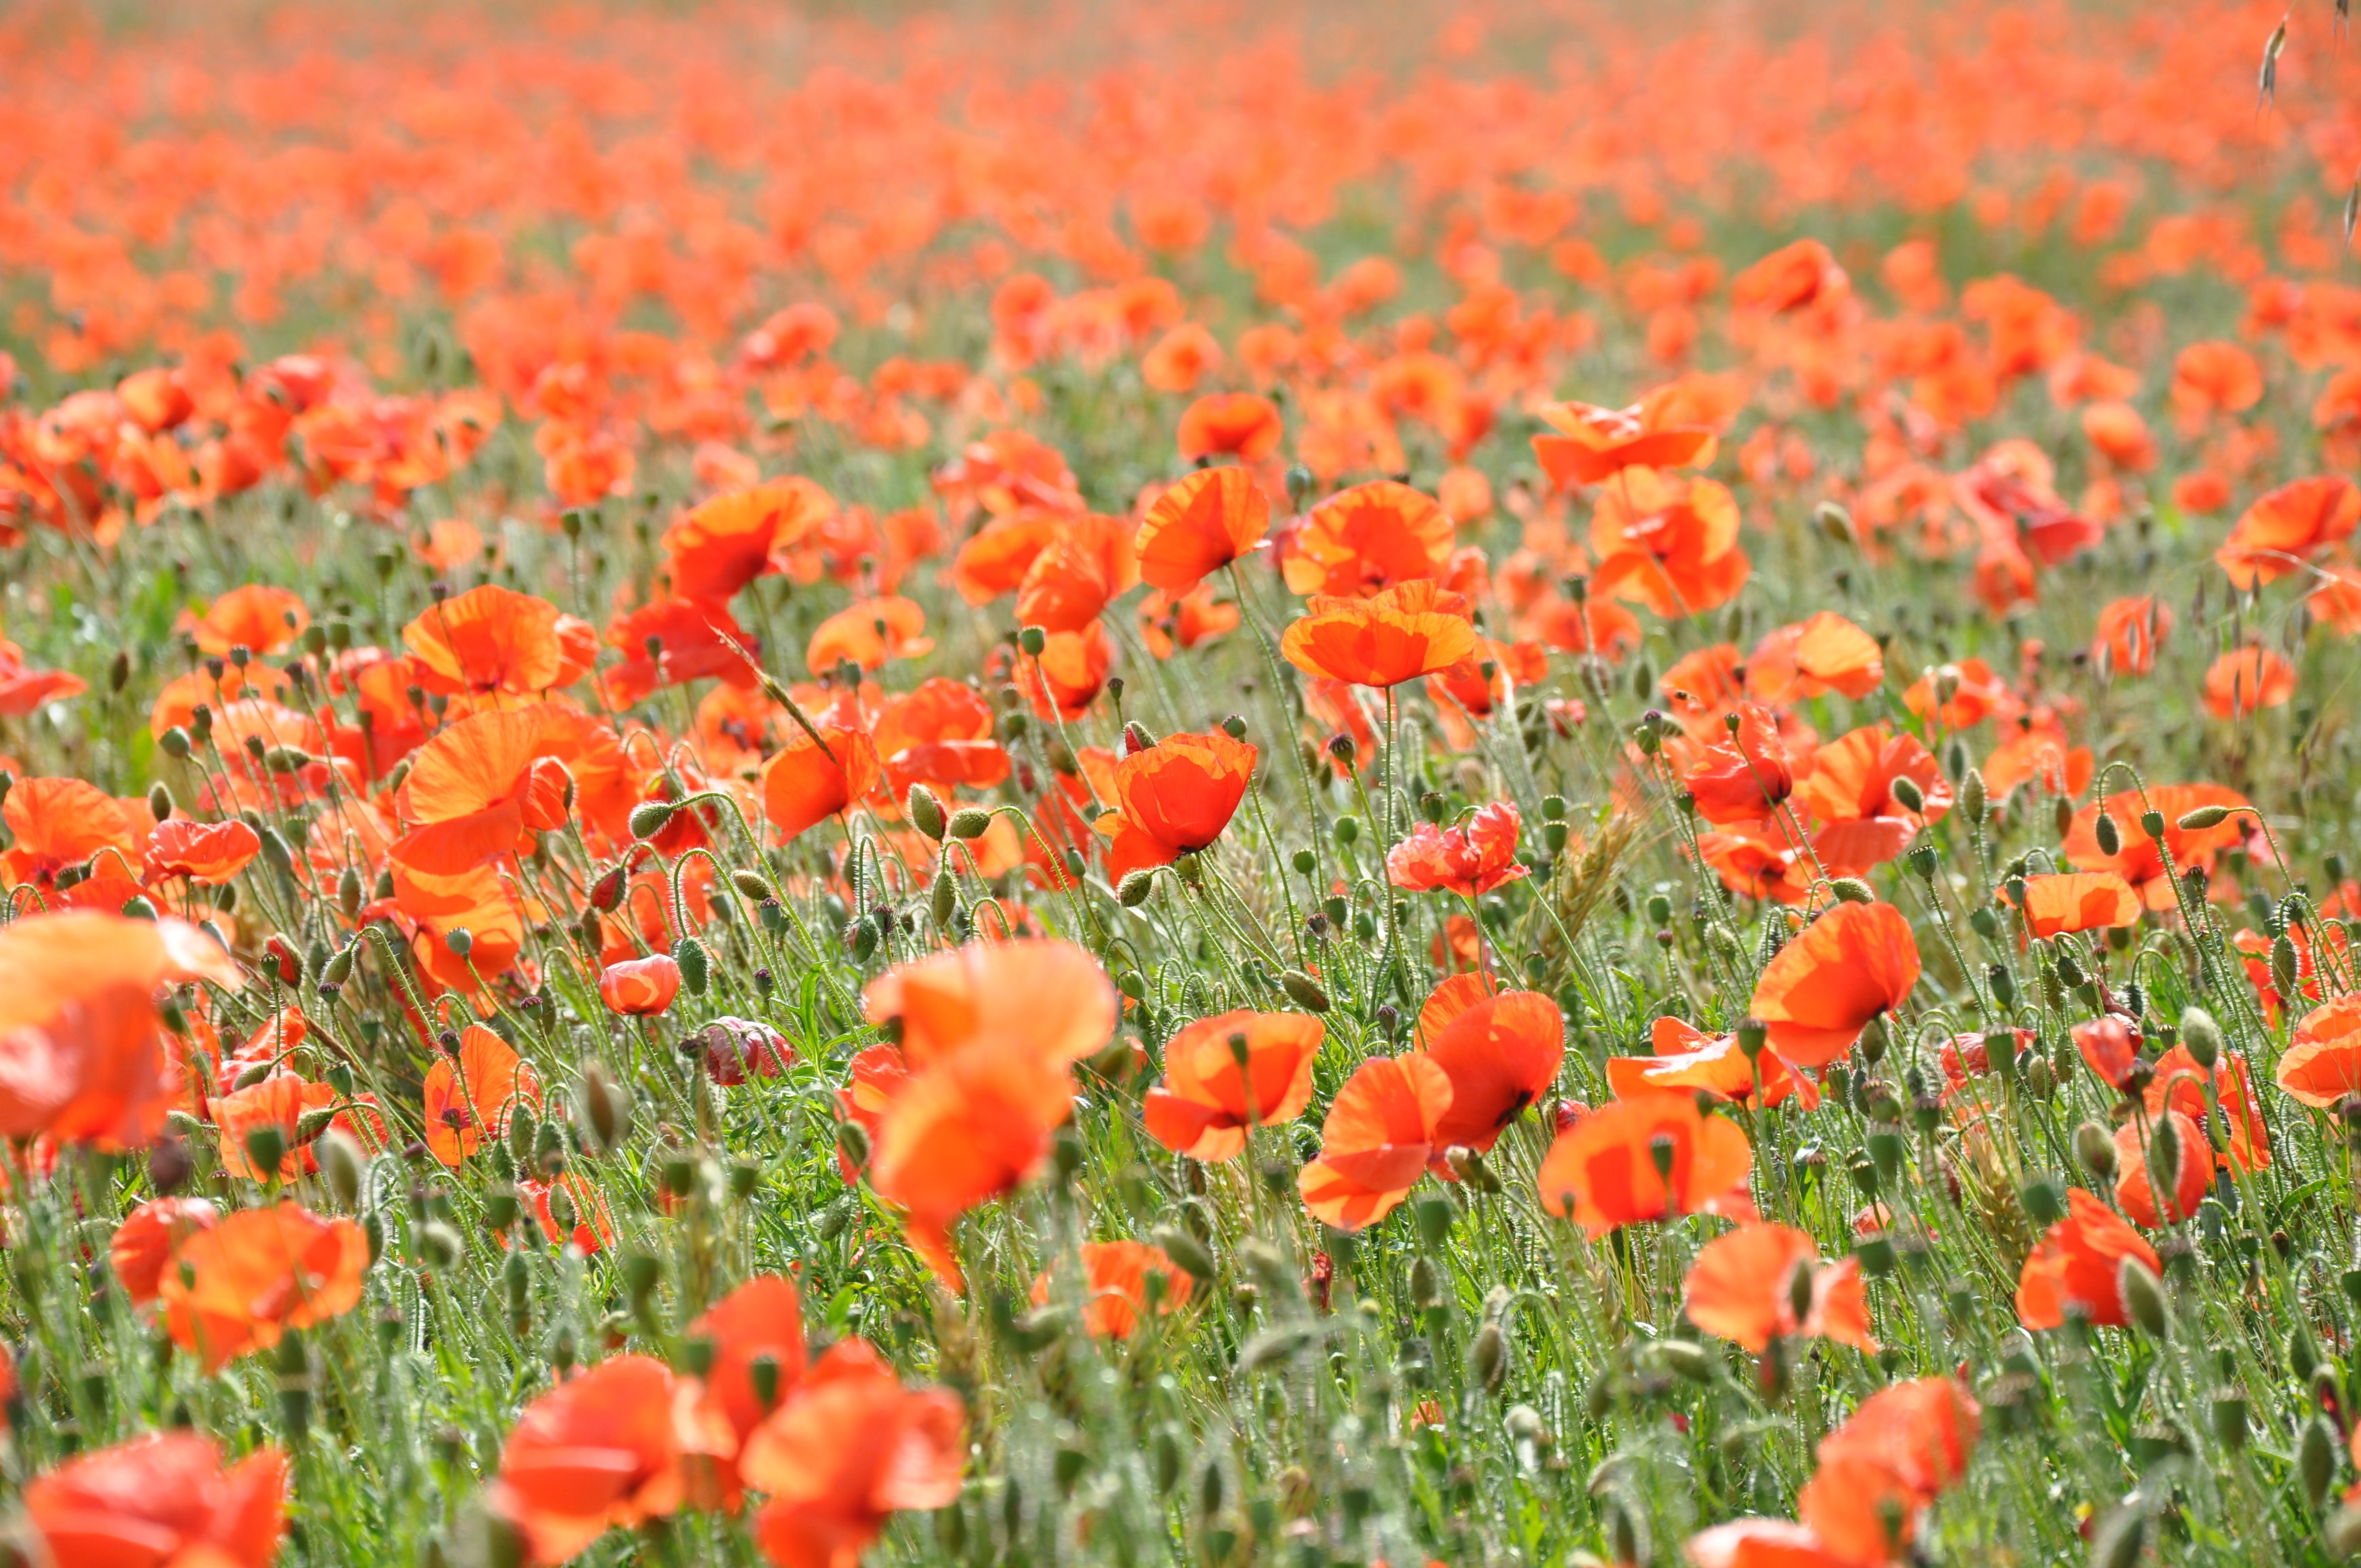 Poppy, Poppies, Field Of Poppies, Field, flower, orange color